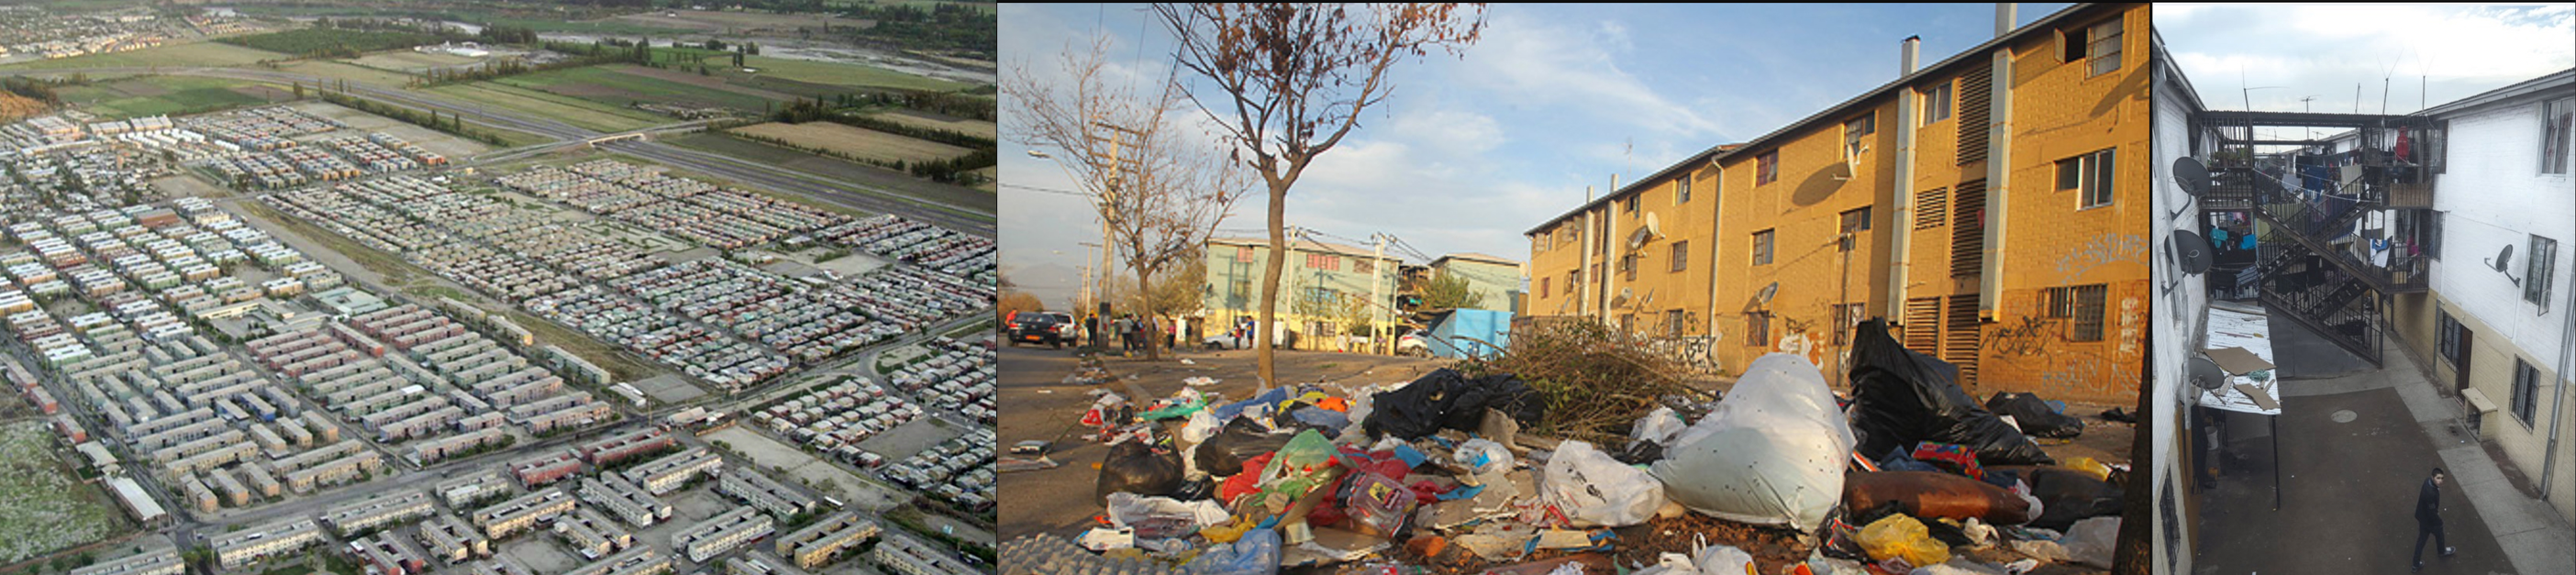 Sector de Bajos de Mena,
en Puente Alto, una de las concentraciones más grandes de condominios sociales